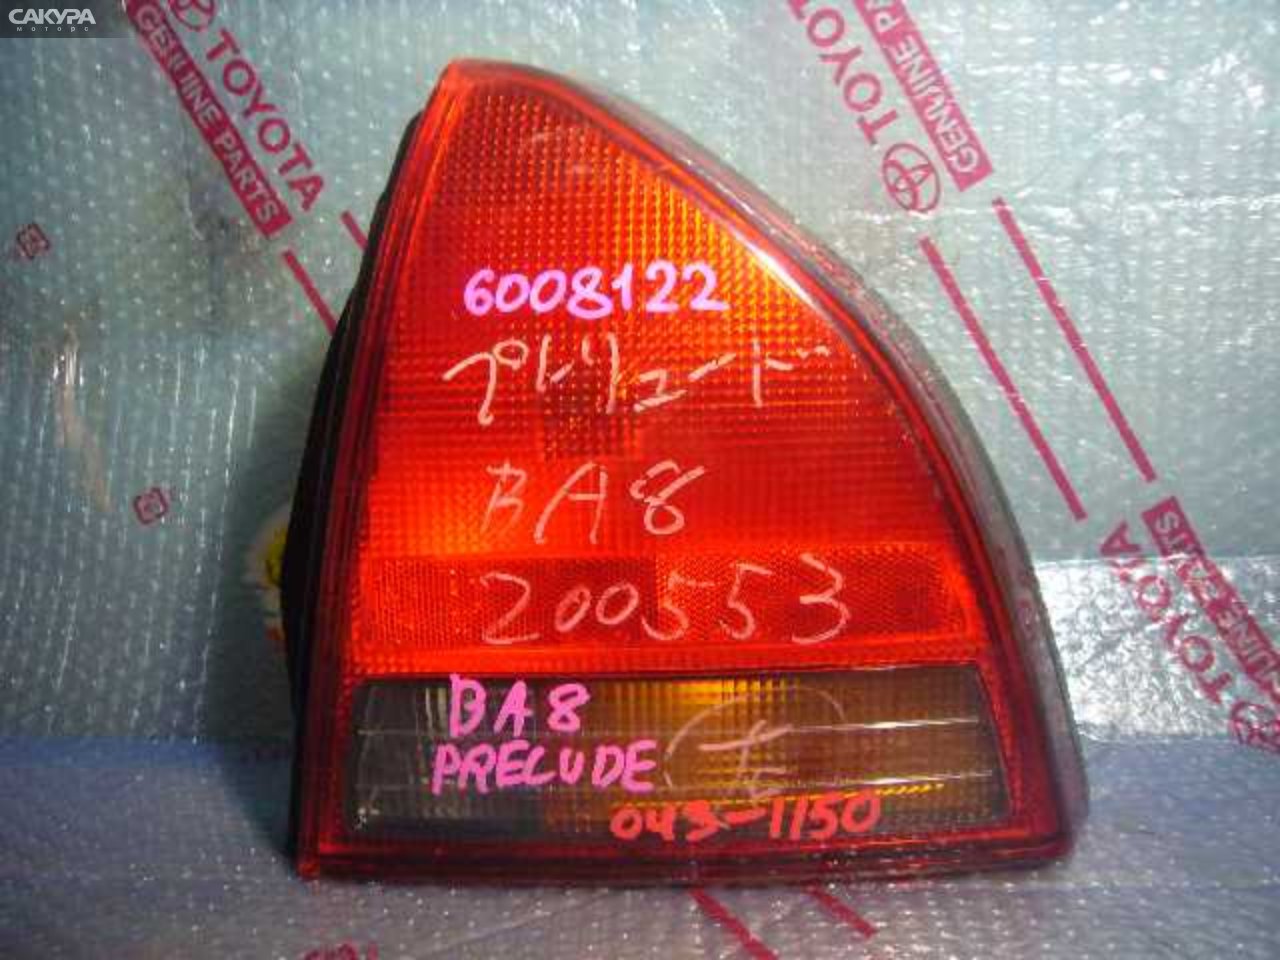 Фонарь стоп-сигнала правый Honda Prelude BA8 043-1150: купить в Сакура Кемерово.